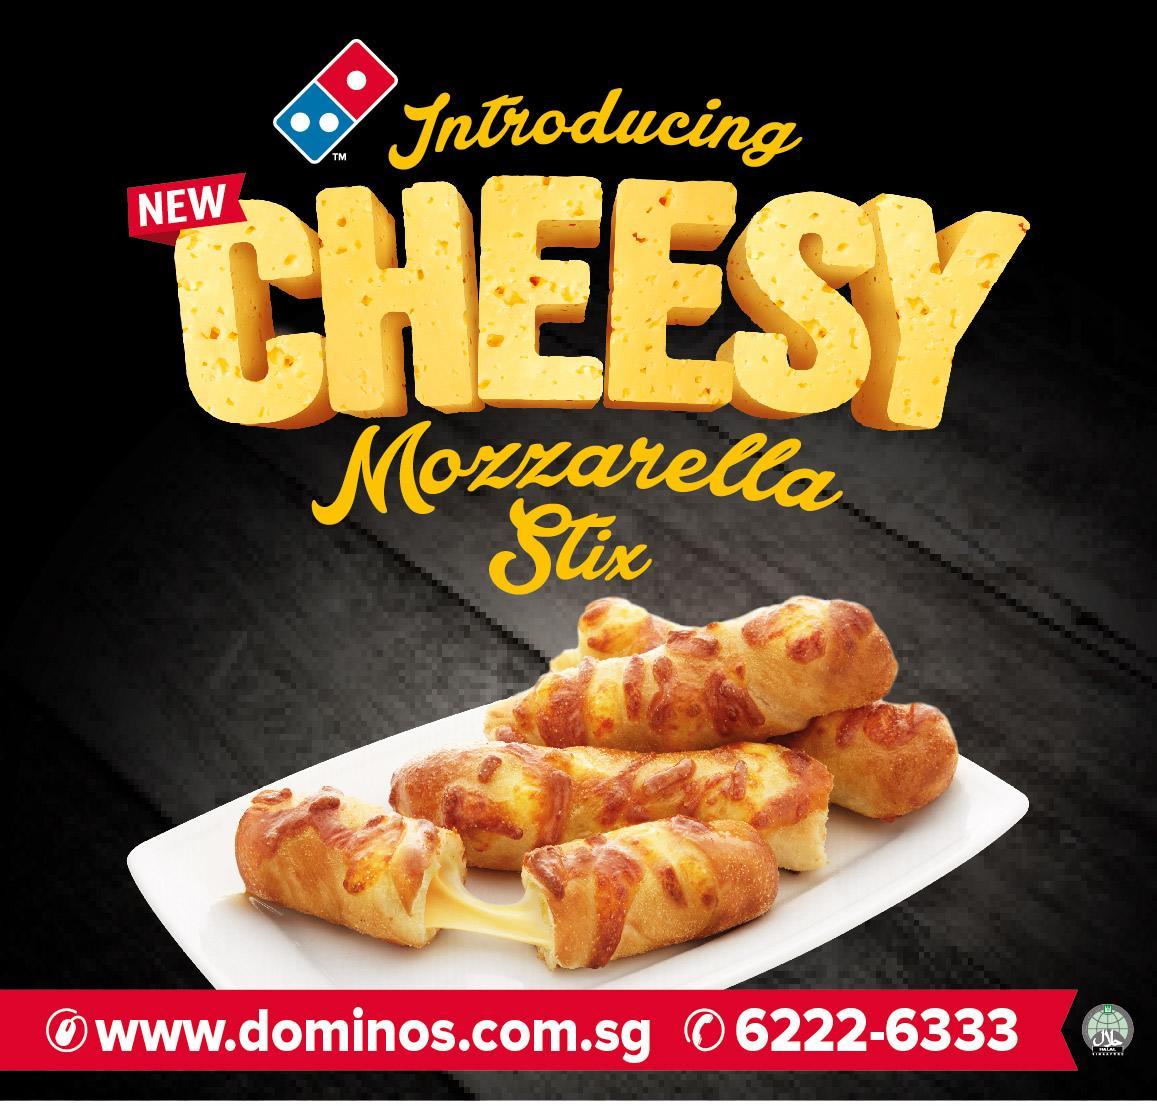 Domino's Cheesy Mozzarella Stix Banner